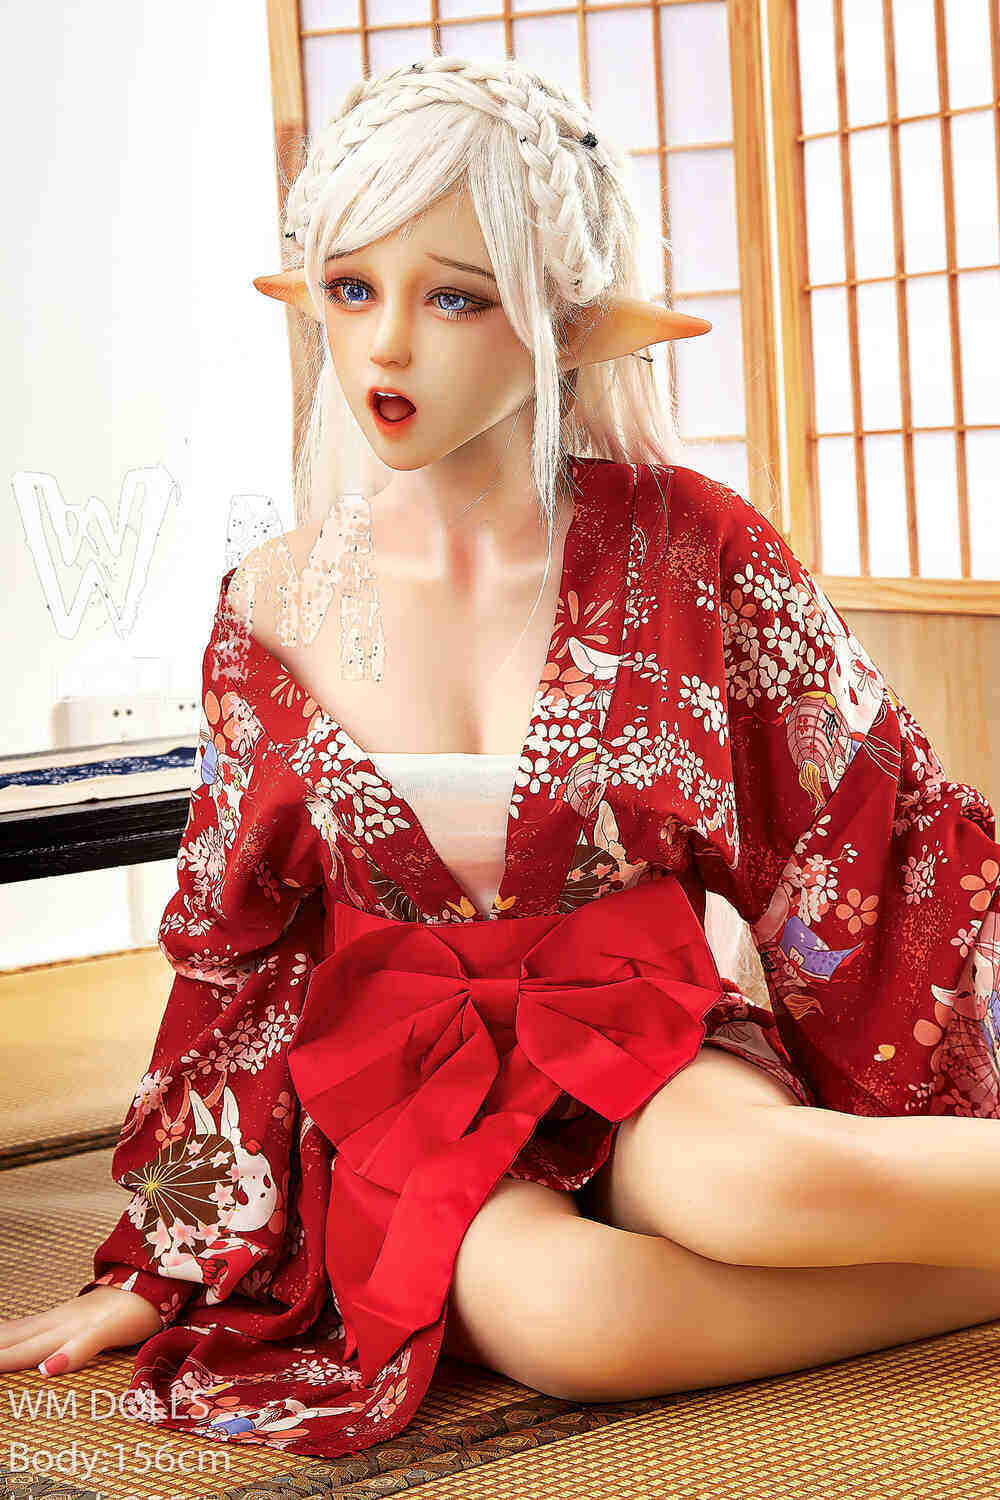 Avryl - Medium Breast 156cm(5ft1) C-Cup Pretty Thin Waist TPE WM Dolls image3